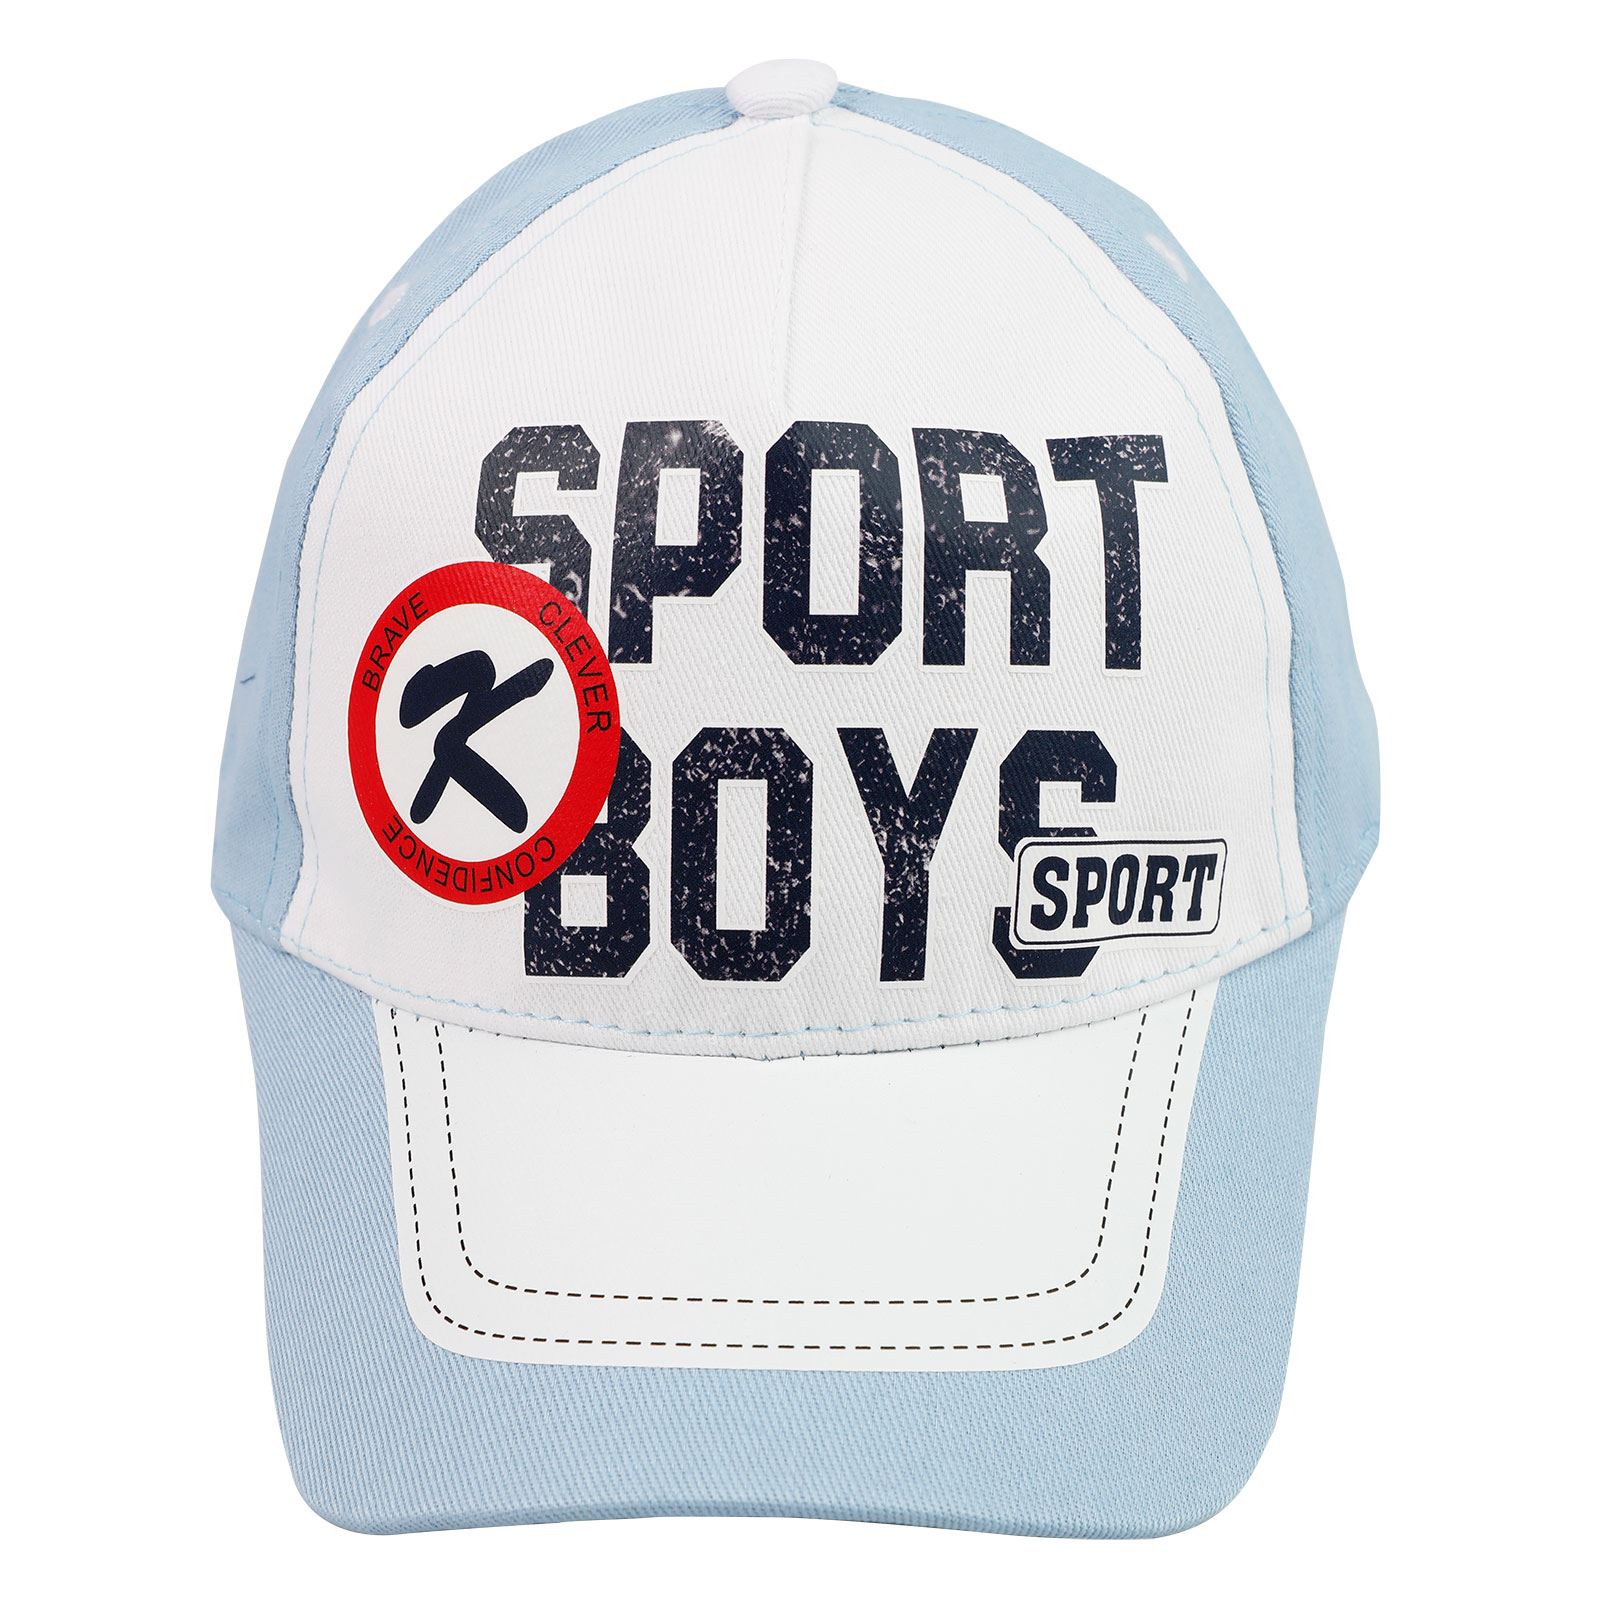 Tidi Erkek Çocuk Kep Şapka 3-7 Yaş Mavi